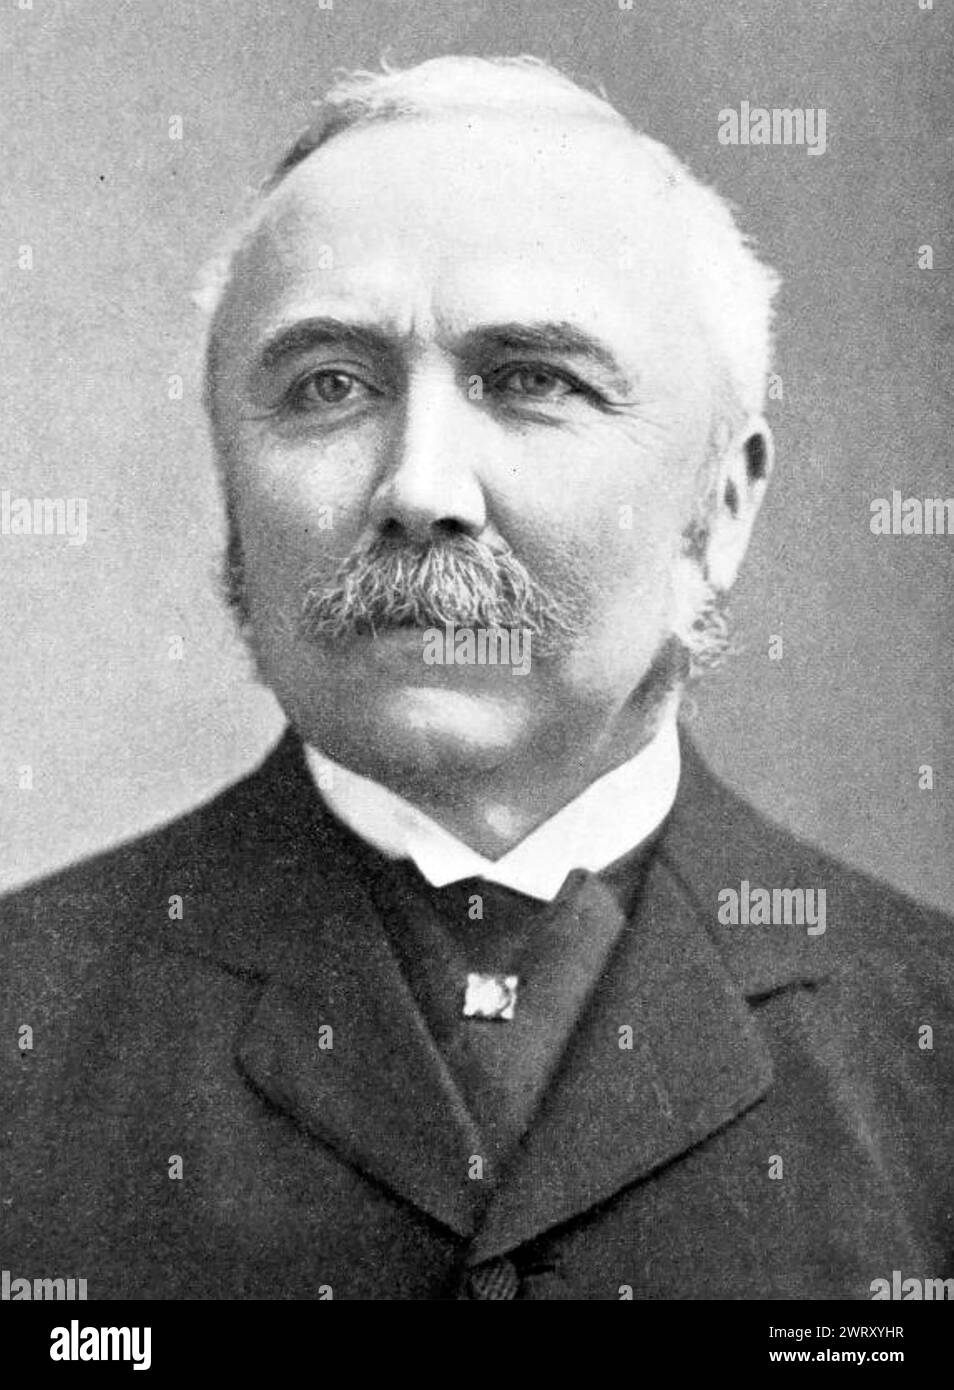 HENRY CAMPBELL-BANNERMAN (1836-1908) premier ministre britannique, vers 1905 Banque D'Images